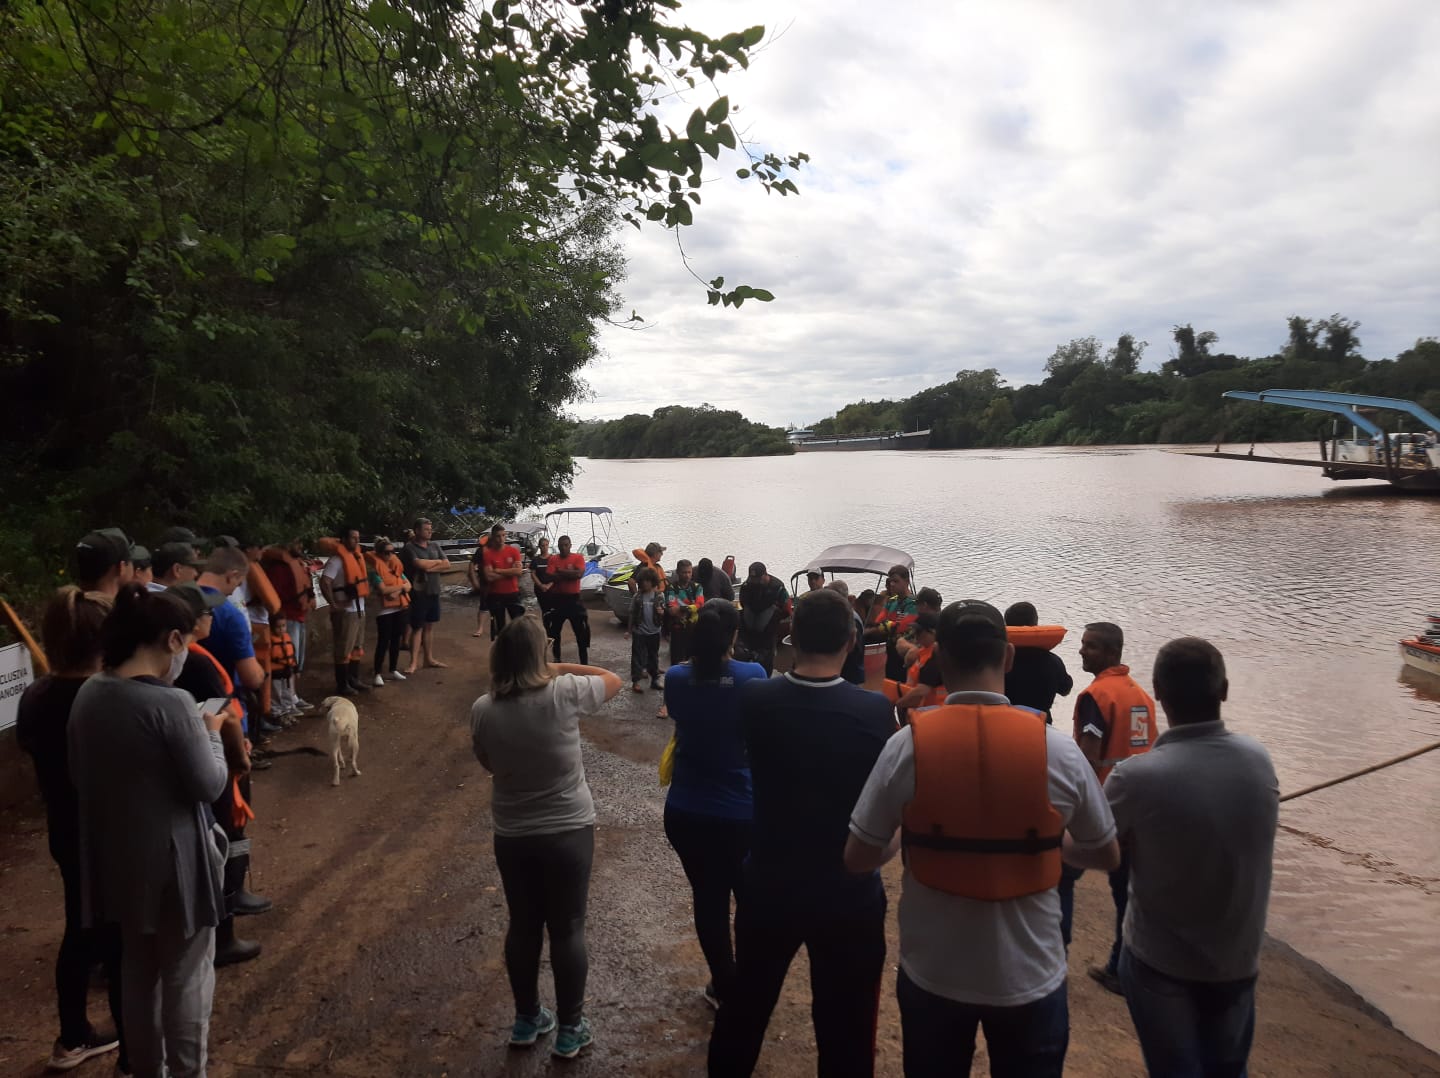 Foto divulgação: Limpeza do rio Taquari: Anualmente, voluntários se mobilizam em prol da ação, que beneficia toda a comunidade